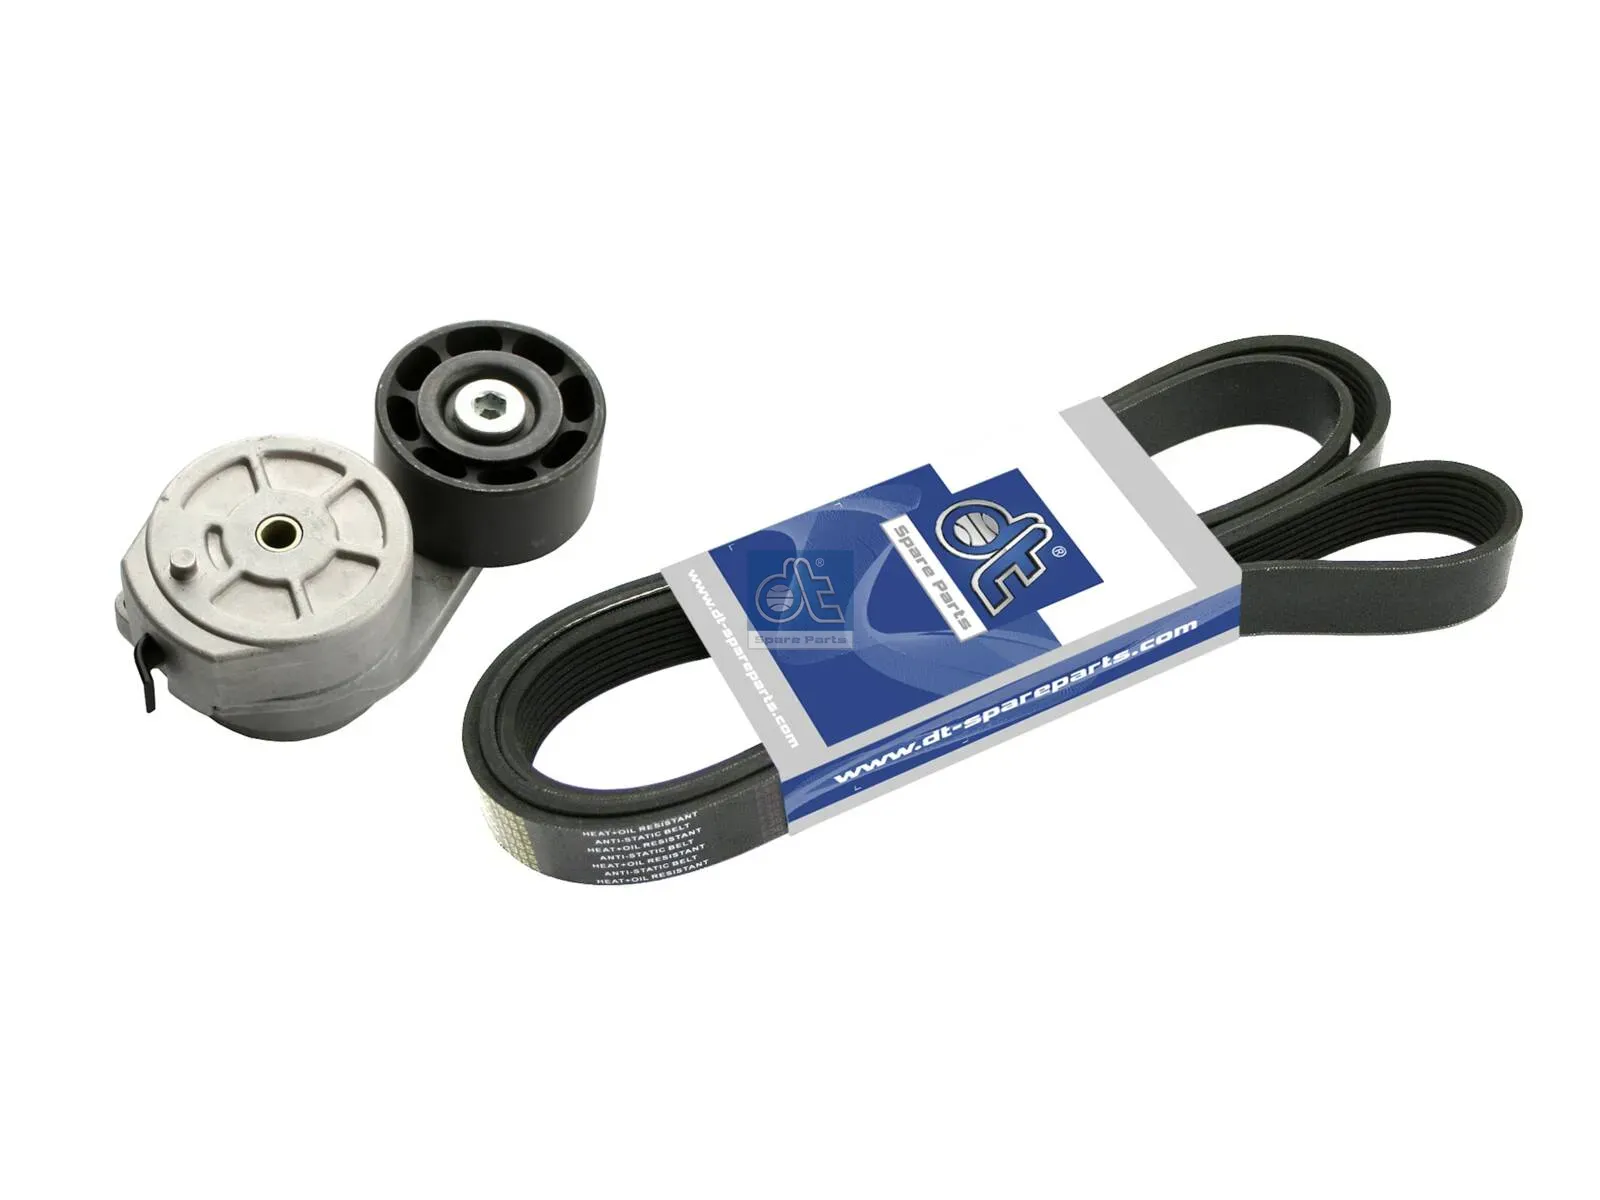 Belt tensioner, complete, with multiribbed belt